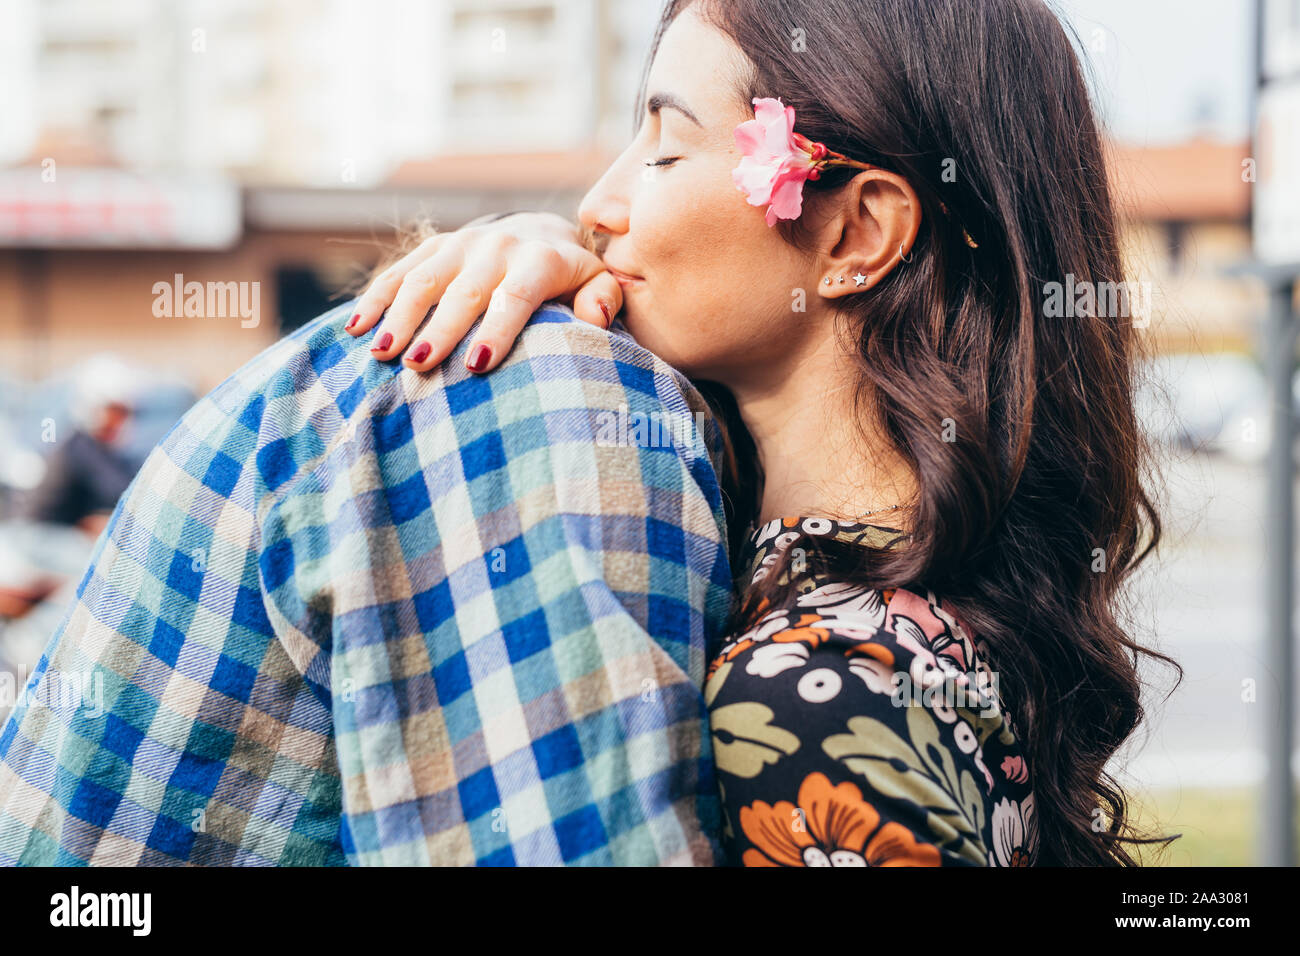 Junge schöne glückliche Paar outdoor umarmen - Liebe, Kleben, Romanze Konzept Stockfoto